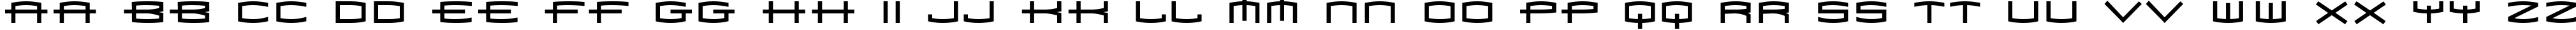 Пример написания английского алфавита шрифтом 1979